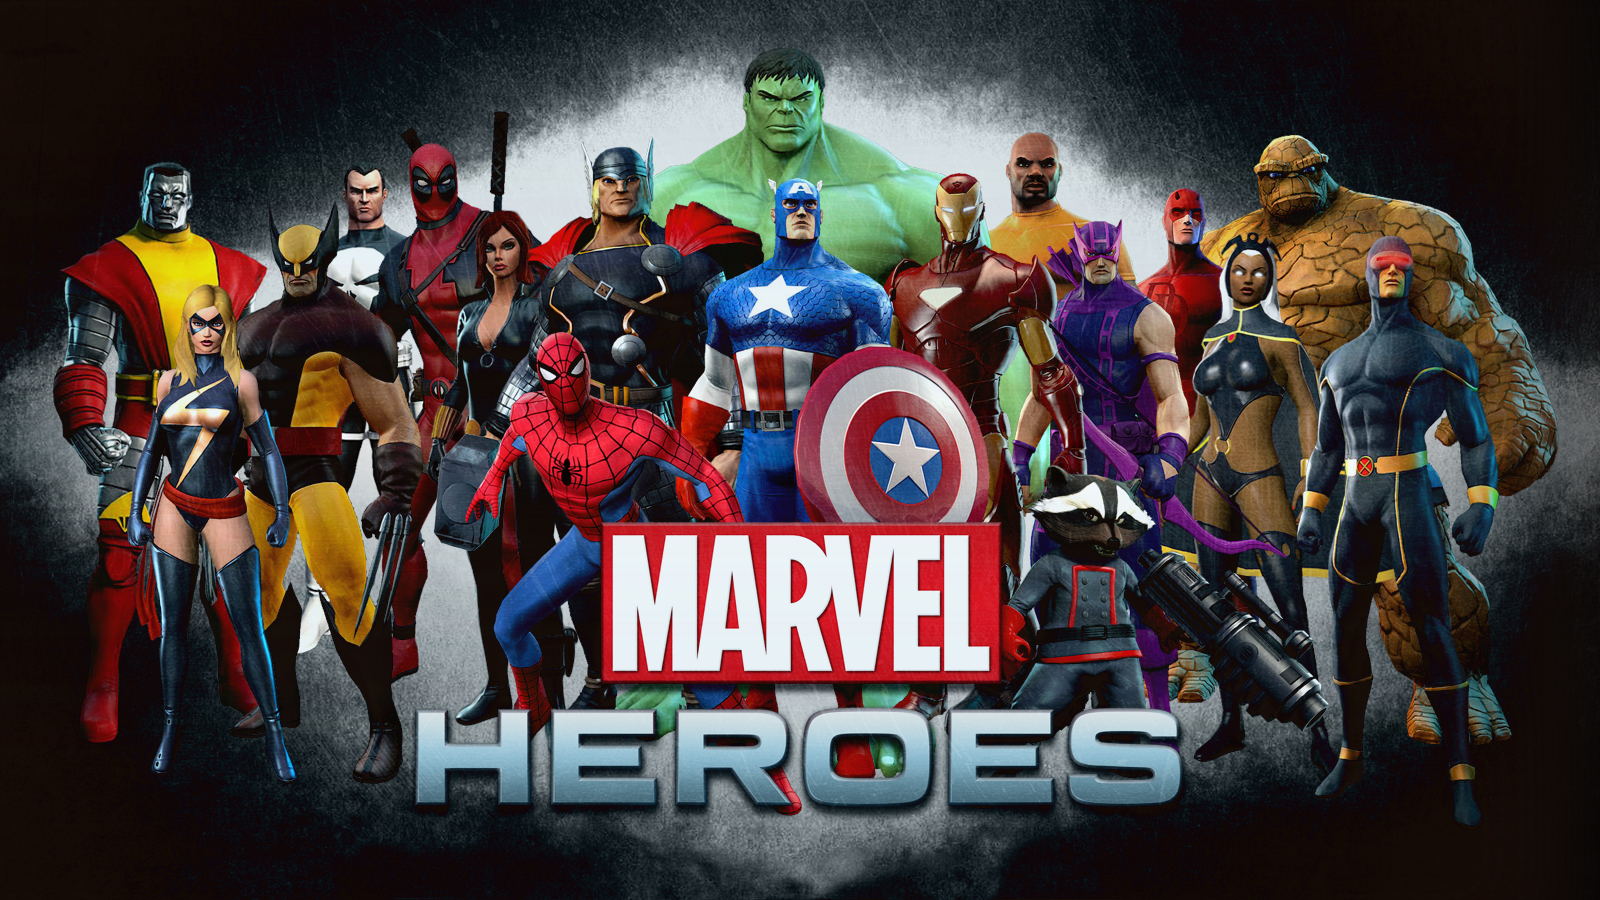 Marvel Heroes Wallpaper UPDATED w STAR LORD   Marvel Heroes 2015